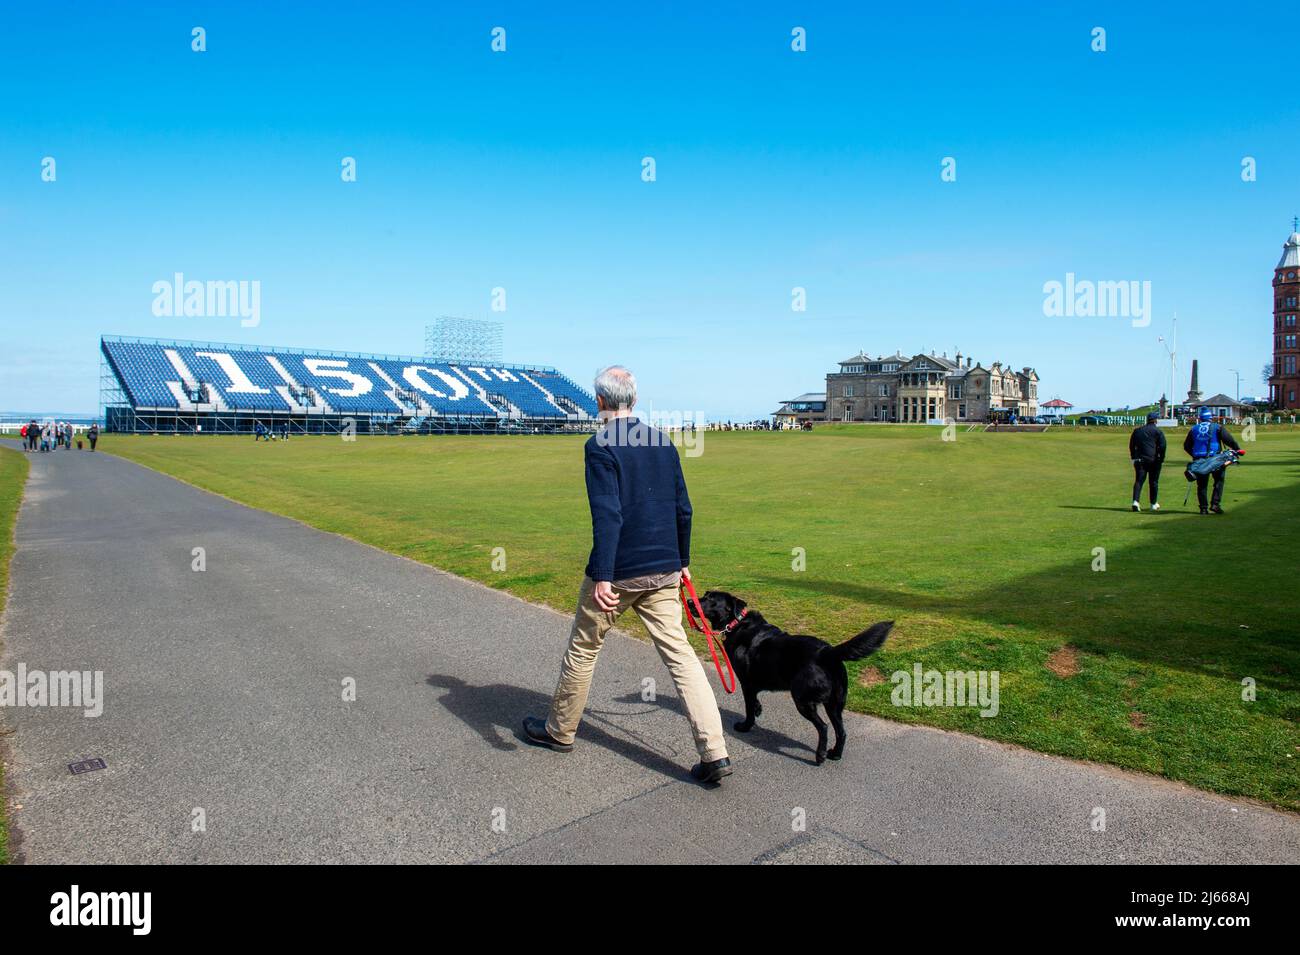 Temporaire se tient en place pour le tournoi Open Golf 150th qui se déroulera en juillet 2022 sur le Old course, St Andrews, Fife, Écosse. Banque D'Images